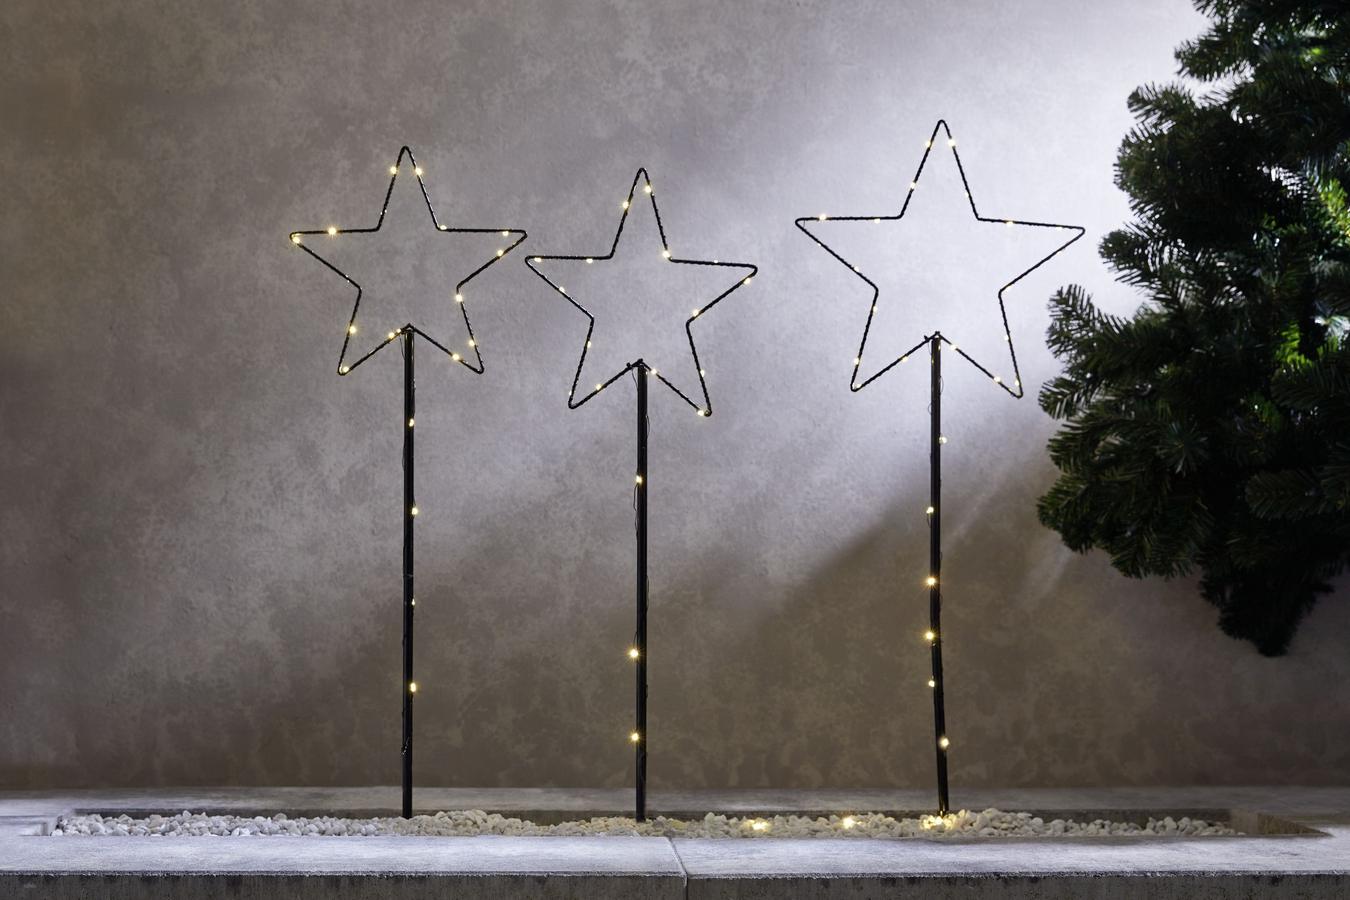 Teremts ünnepi hangulatot az otthonodban karácsonyi dekorációval, szép textilekkel, különleges világítással - ötletek